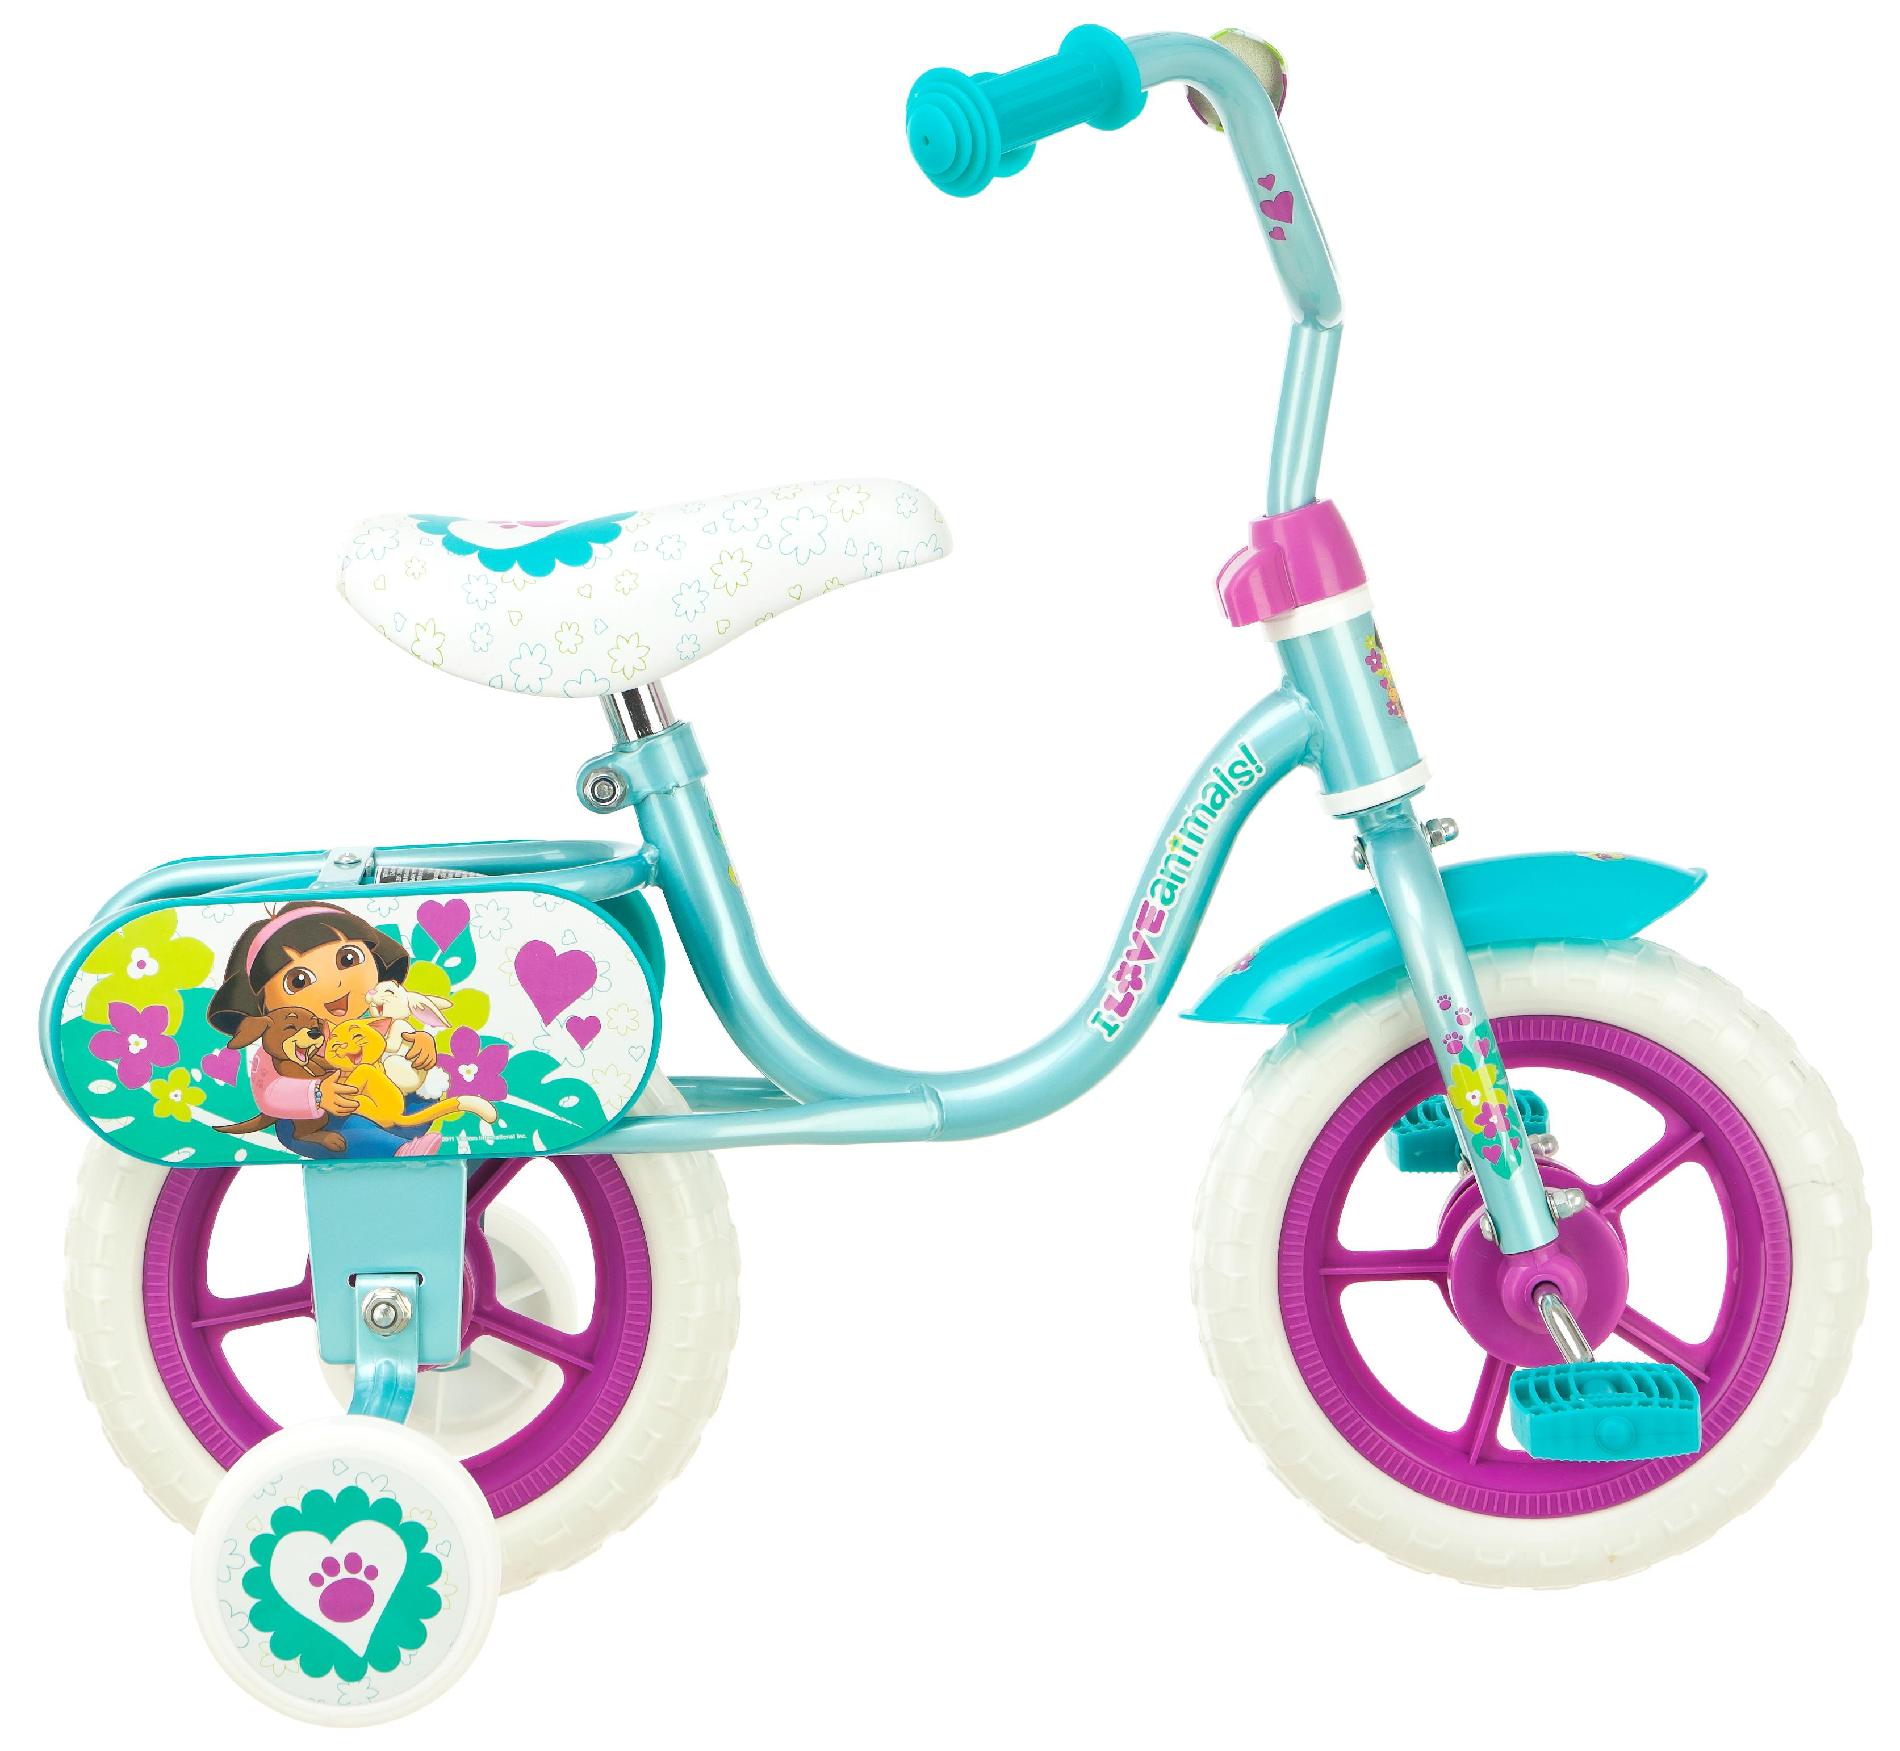 Nickelodeon 10” Girls Dora Puppy Pals Sidewalk Bike—$24.99